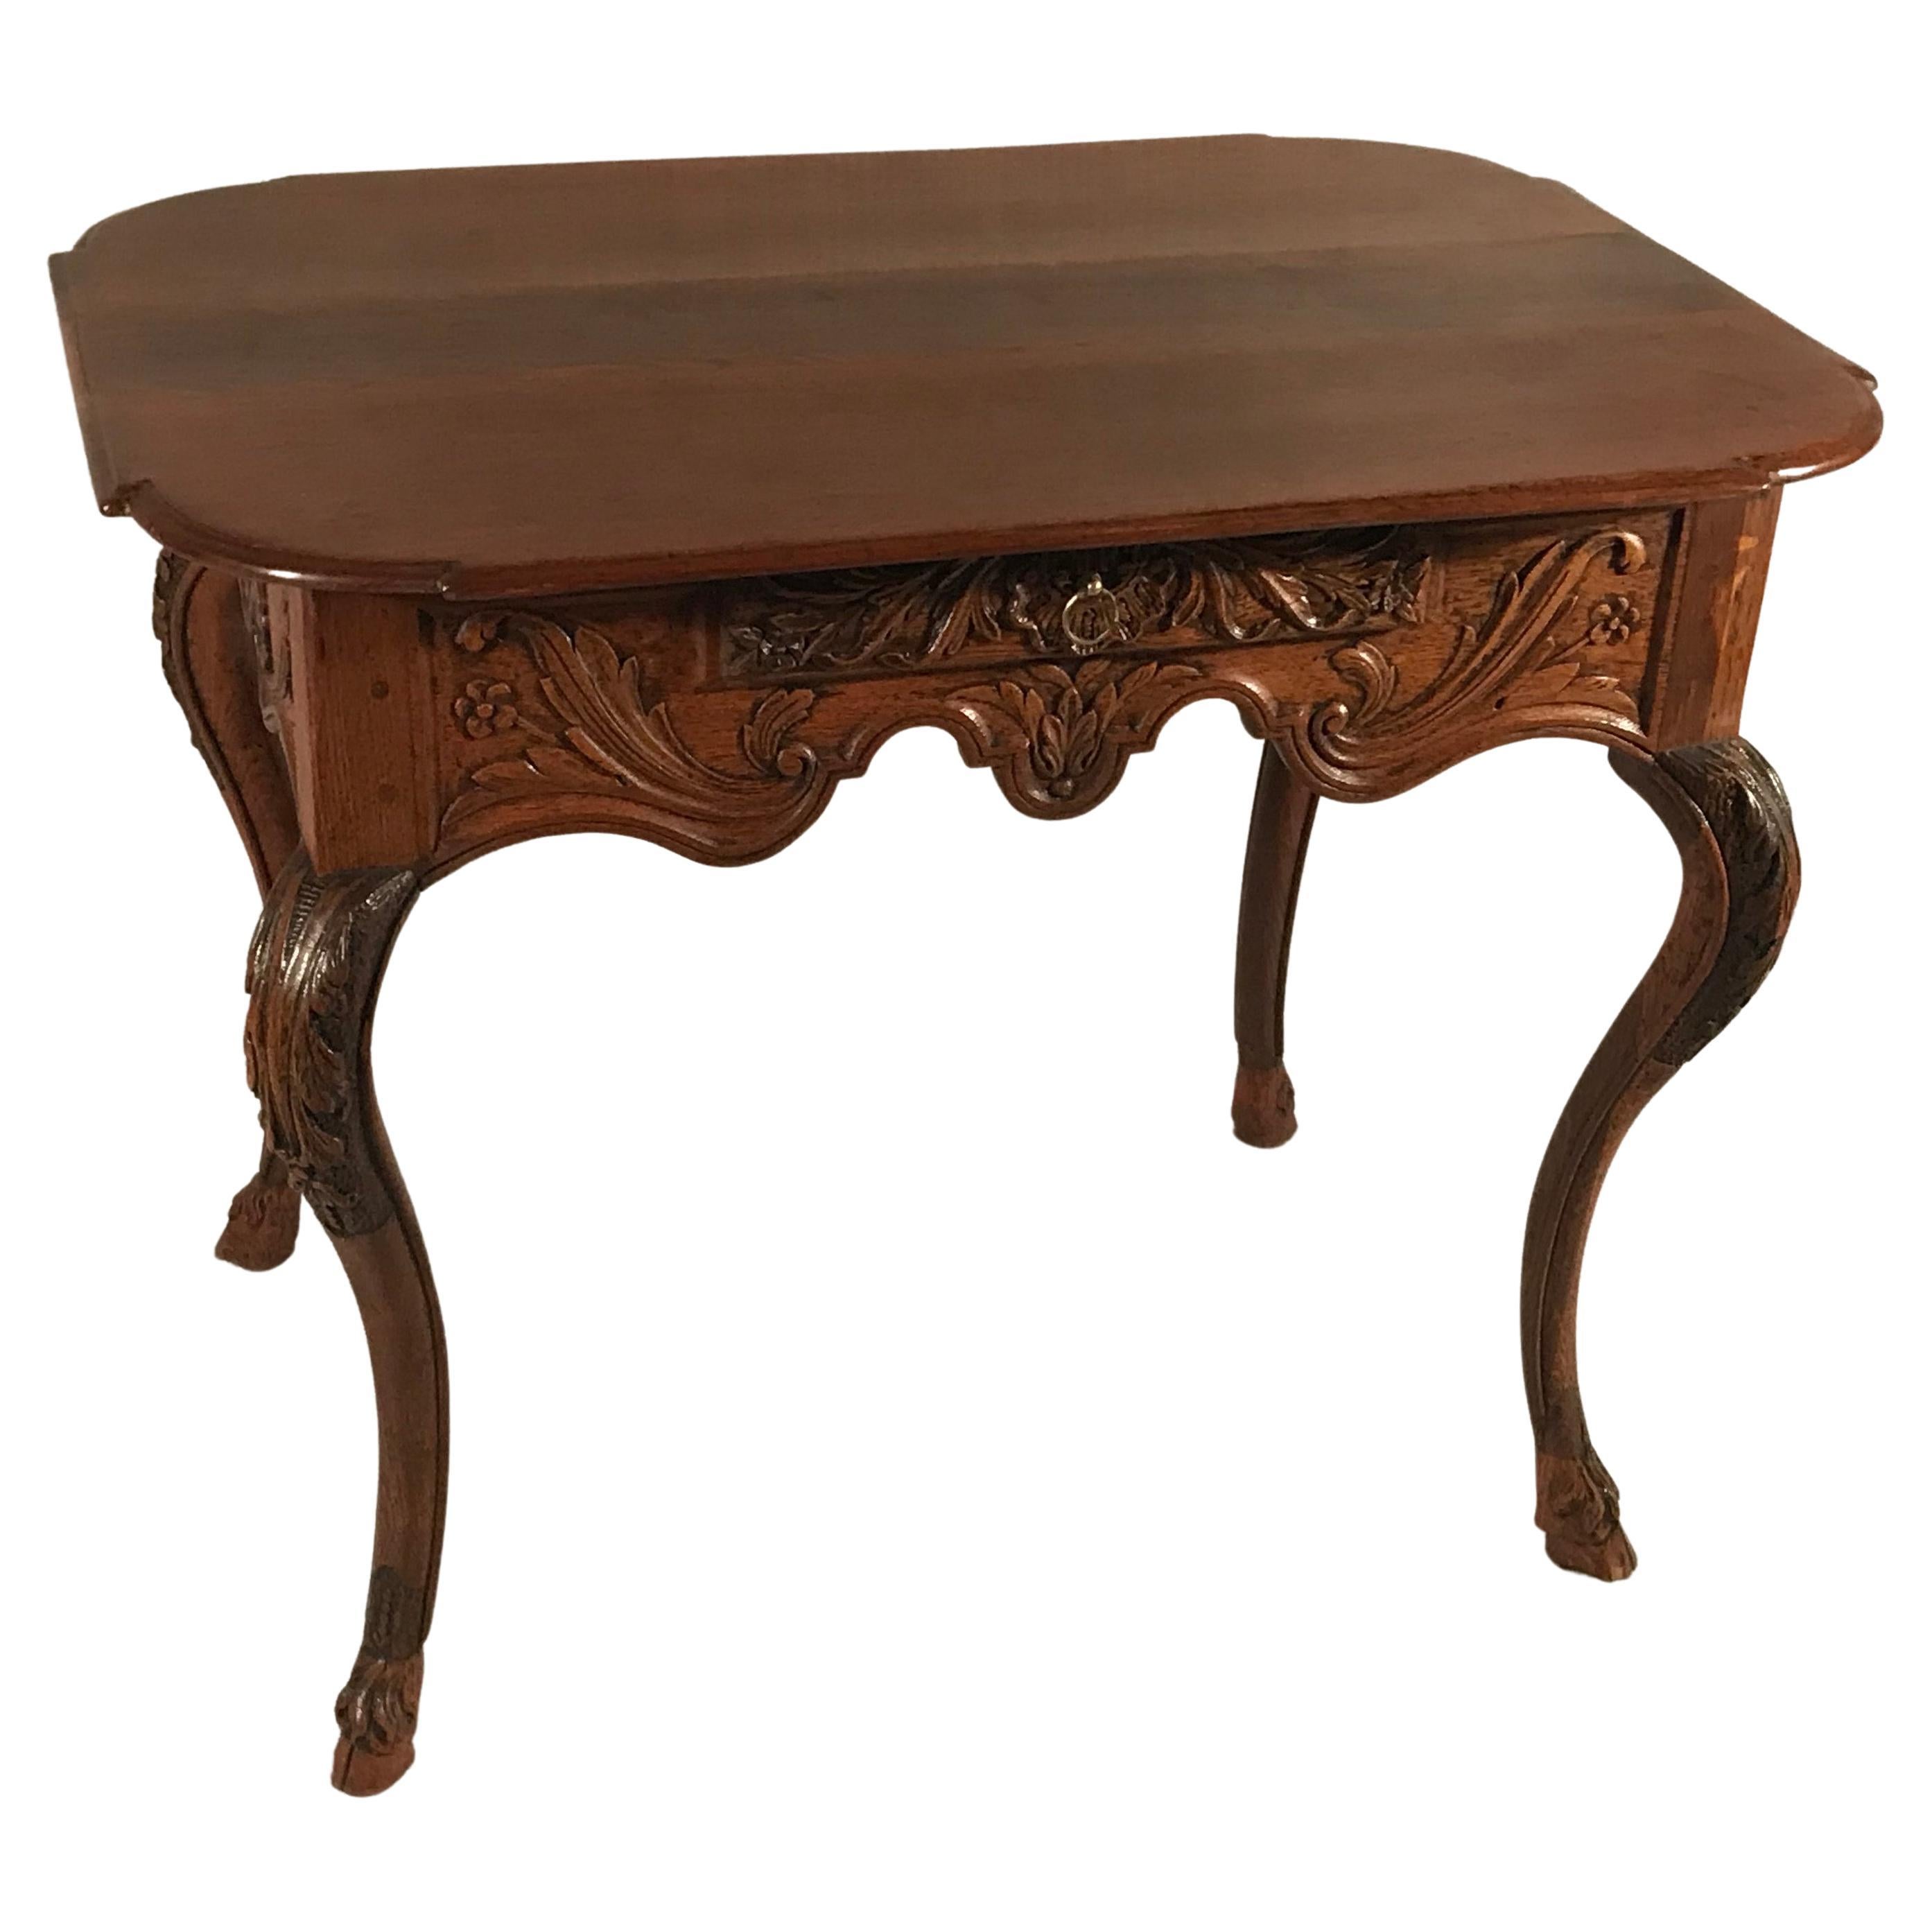 Barocktisch, Flandern, 1750. Exquisit handgeschnitztes Eichenholz mit Rocaille-, Blumen- und Blattdekorationen. Dieser originale Barocktisch aus dem 18. Jahrhundert hat einen ganz besonderen Charme.
Die Tische wurden sorgfältig aufgearbeitet, ohne